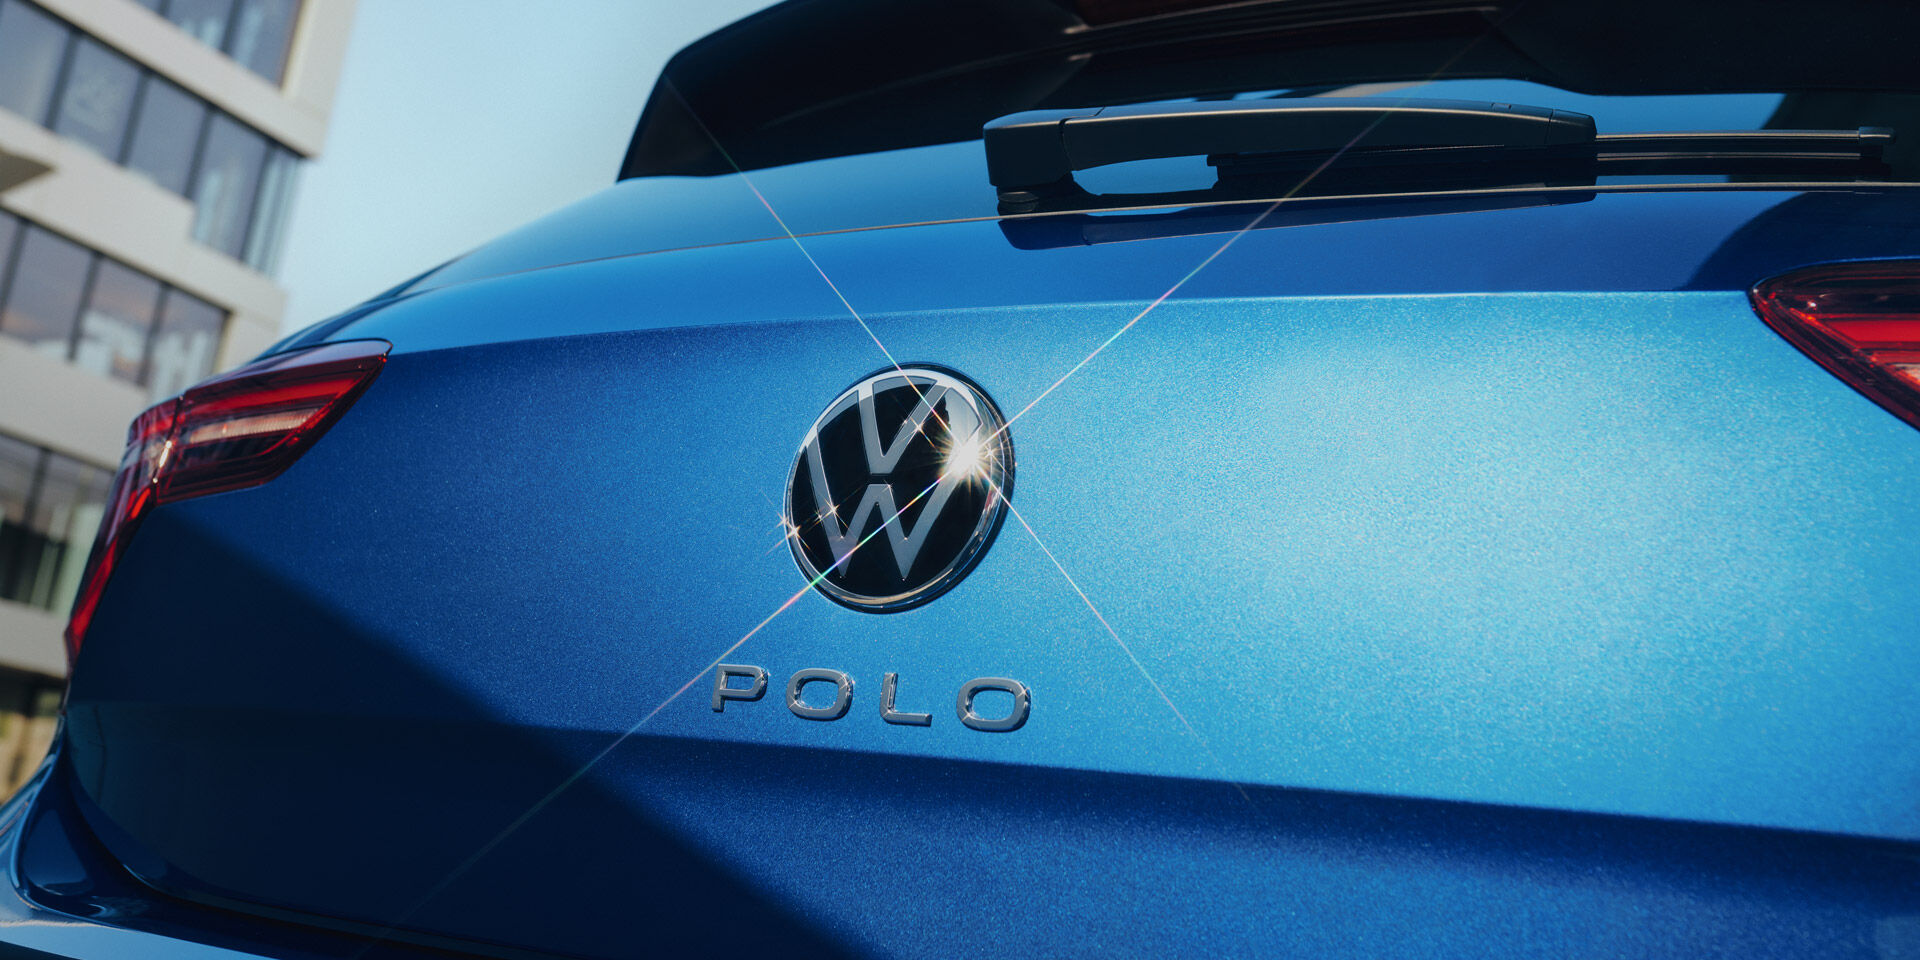 Vista de pormenor do emblema VW e da inscrição "Polo" na porta da bagageira de um Polo azul. 